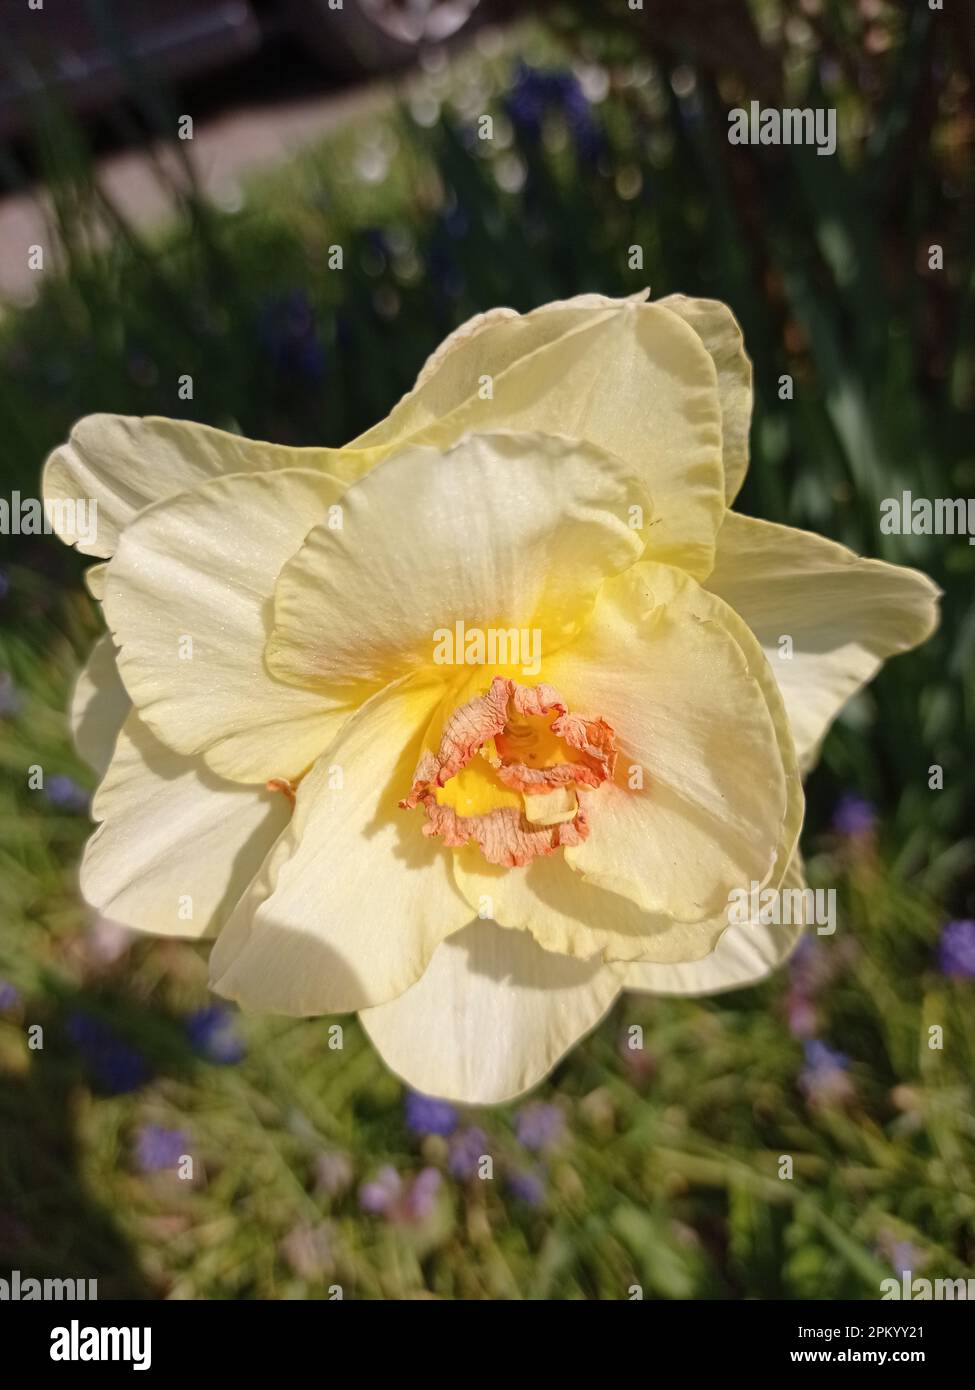 Les narcisses (Narcissus spp.) ou jonquilles sont des plantes vivaces formant de gros bulbes, originaires d'Europe et d'Afrique du nord où elles pouss Stock Photo